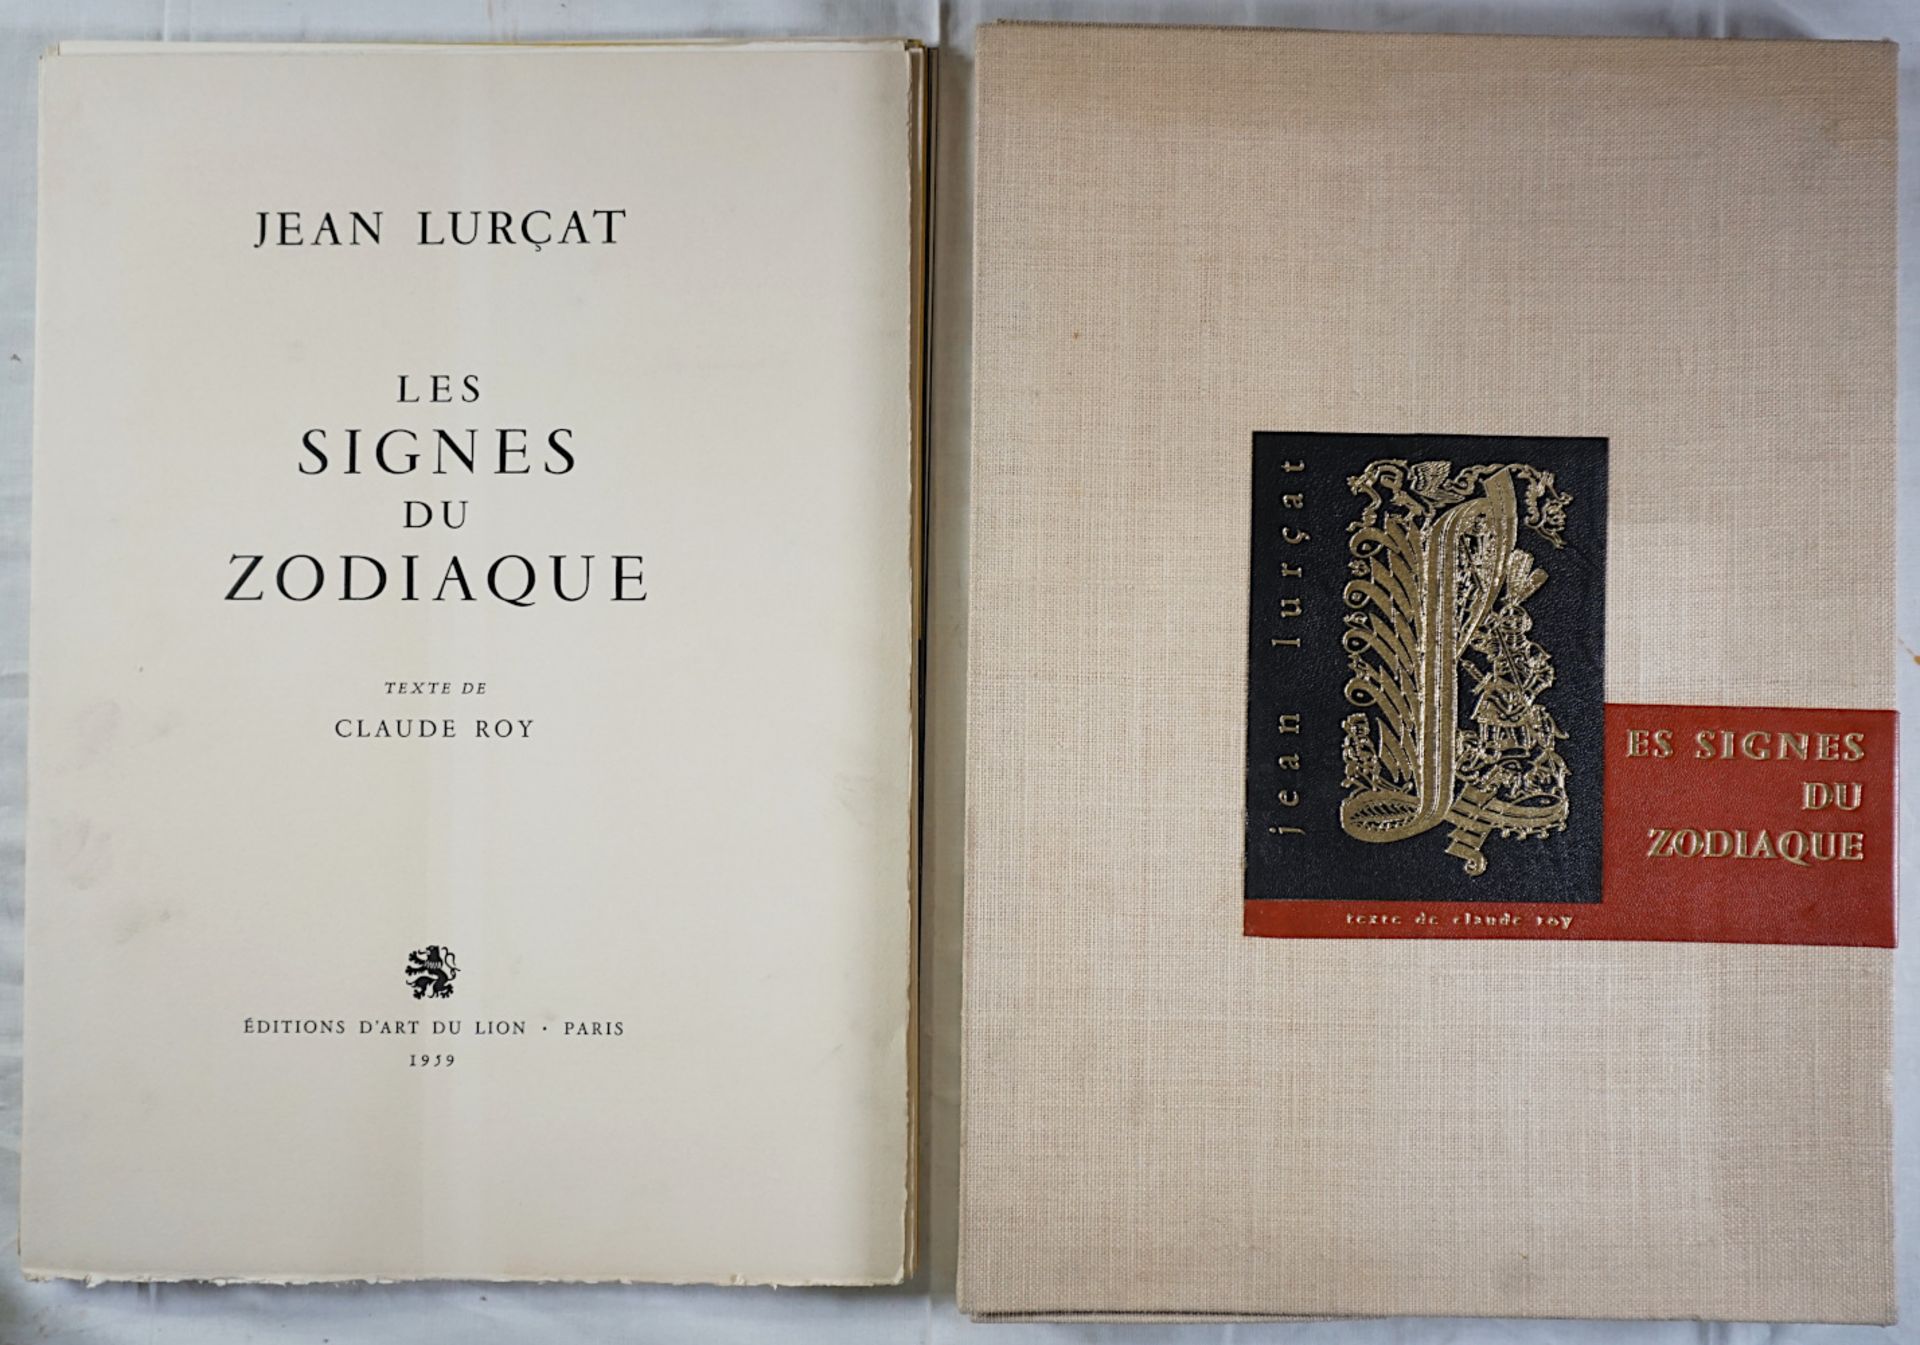 1 Buch "Jean LURCAT. Les signes du Zodiaque. Texte de Claude Roy."Paris, Editions d'Ar